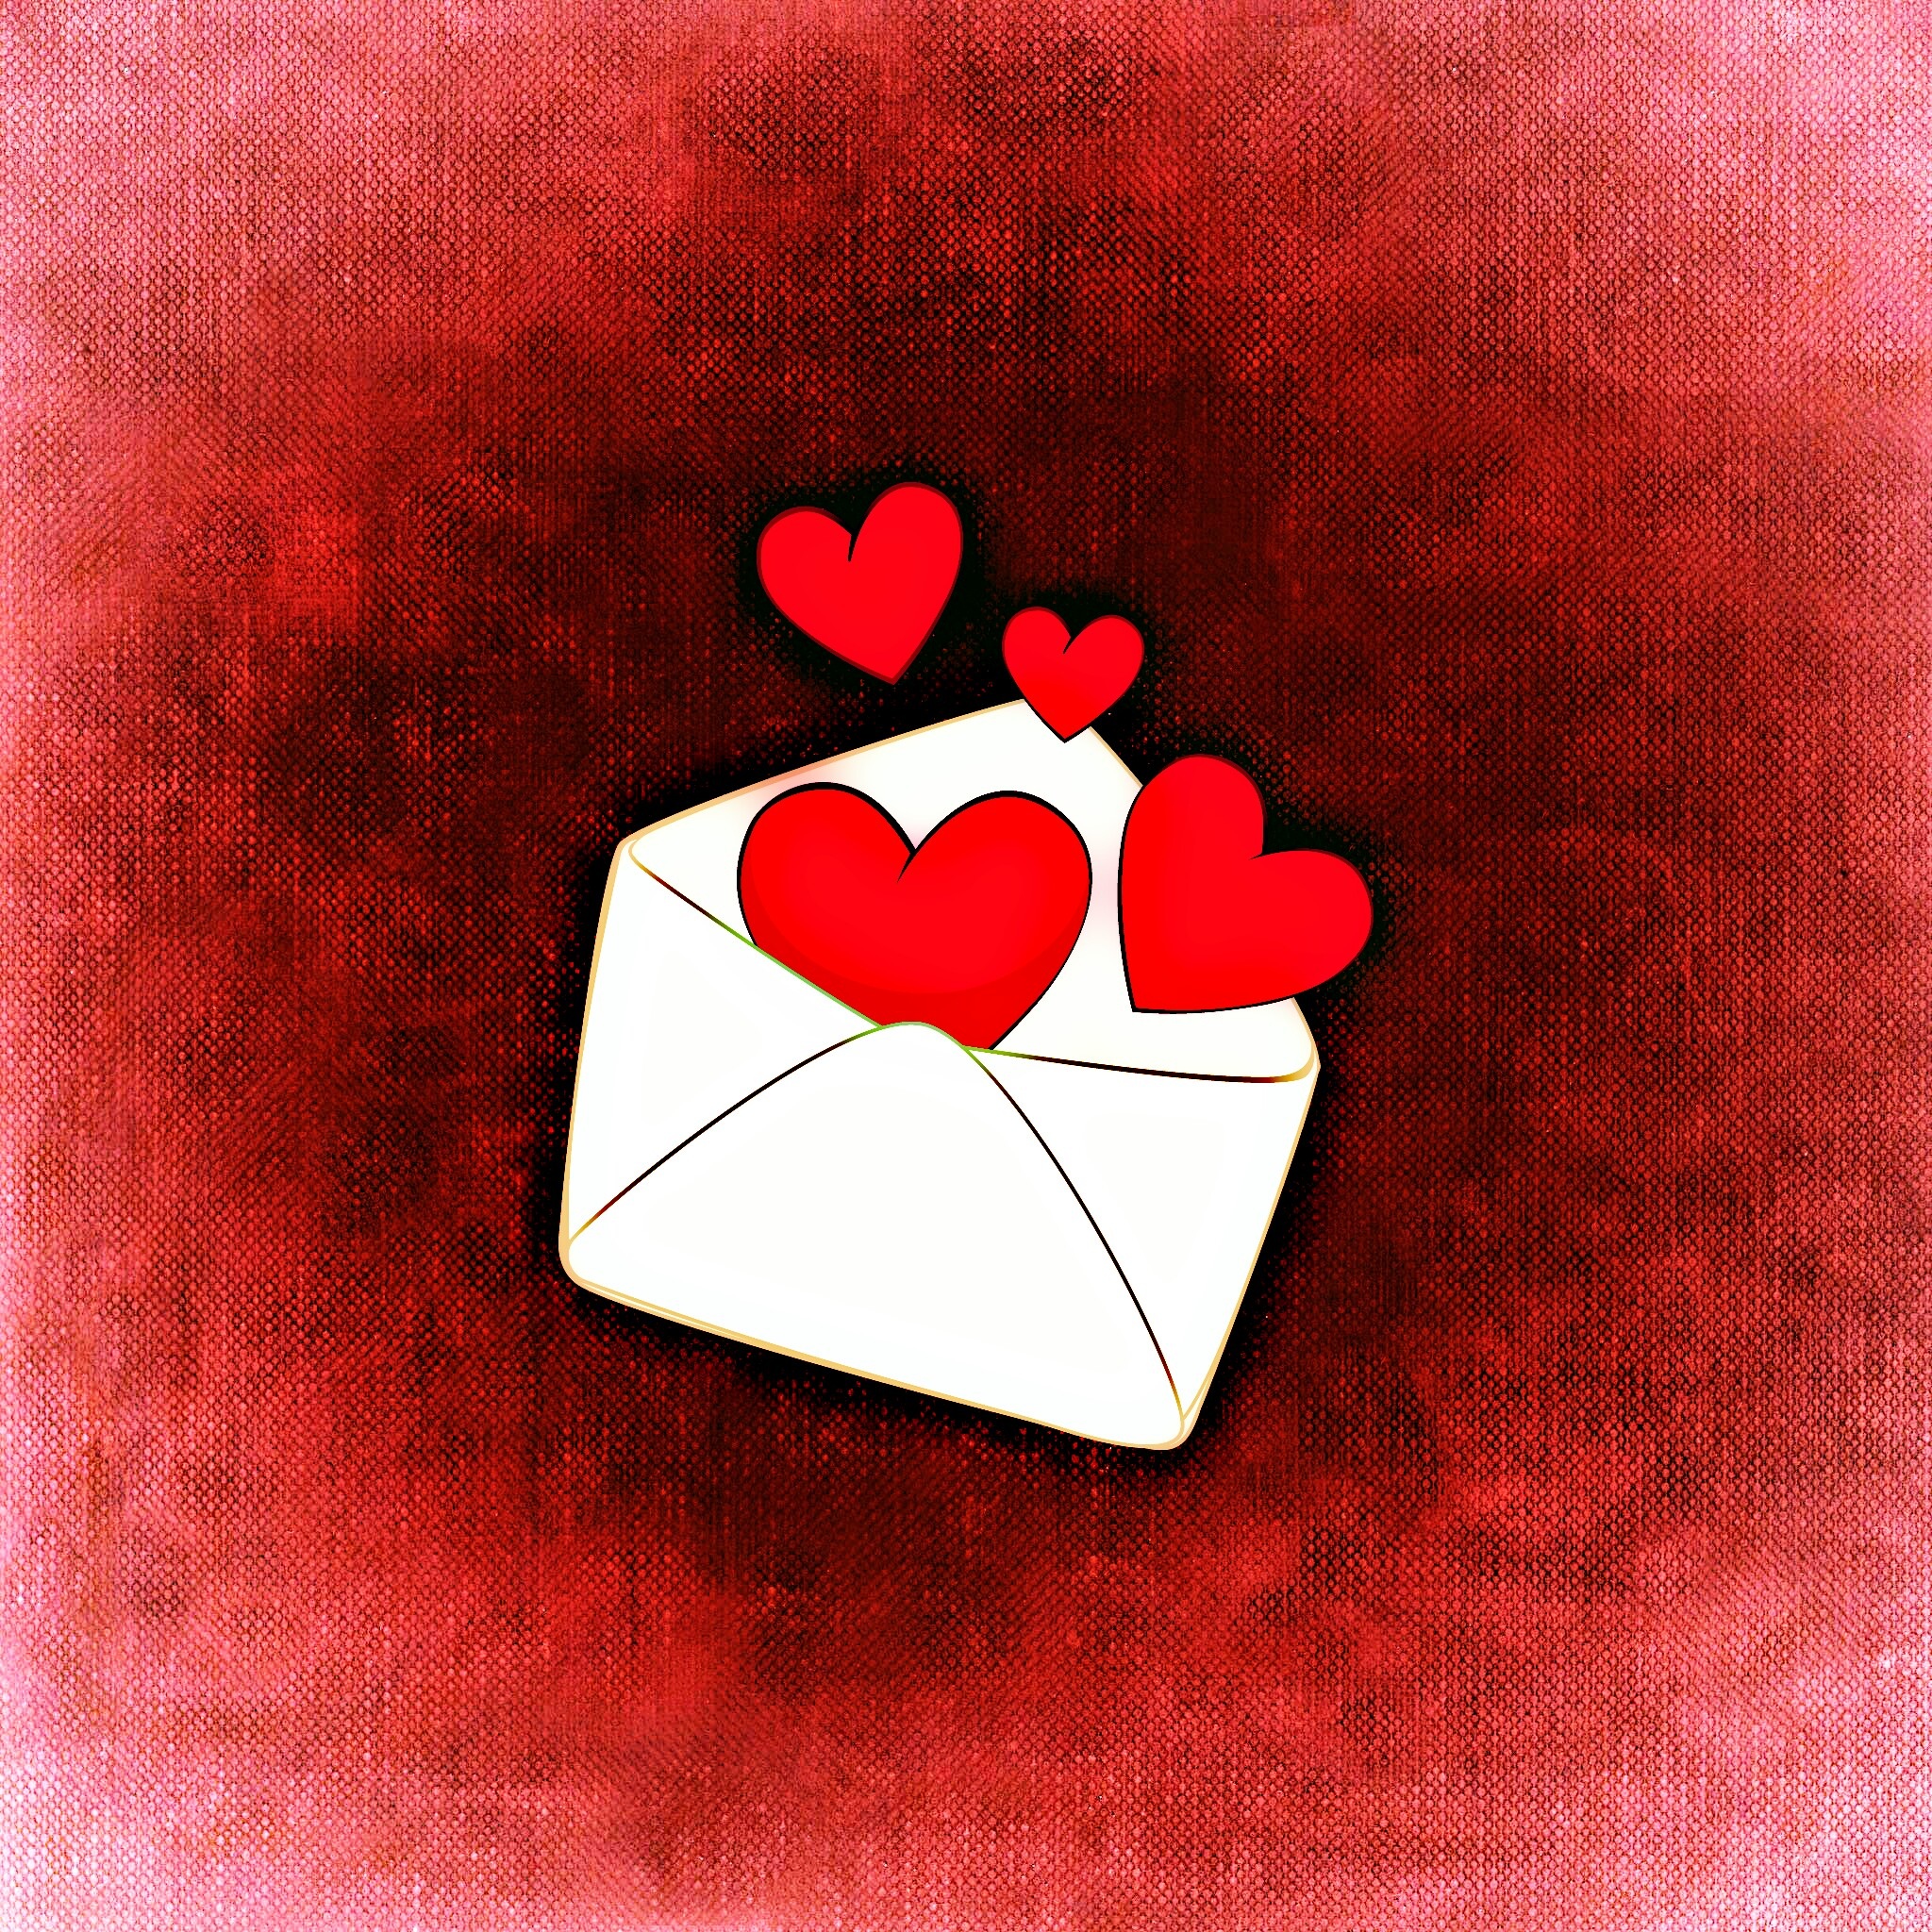 art, love, hearts, romance, envelope 4K for PC